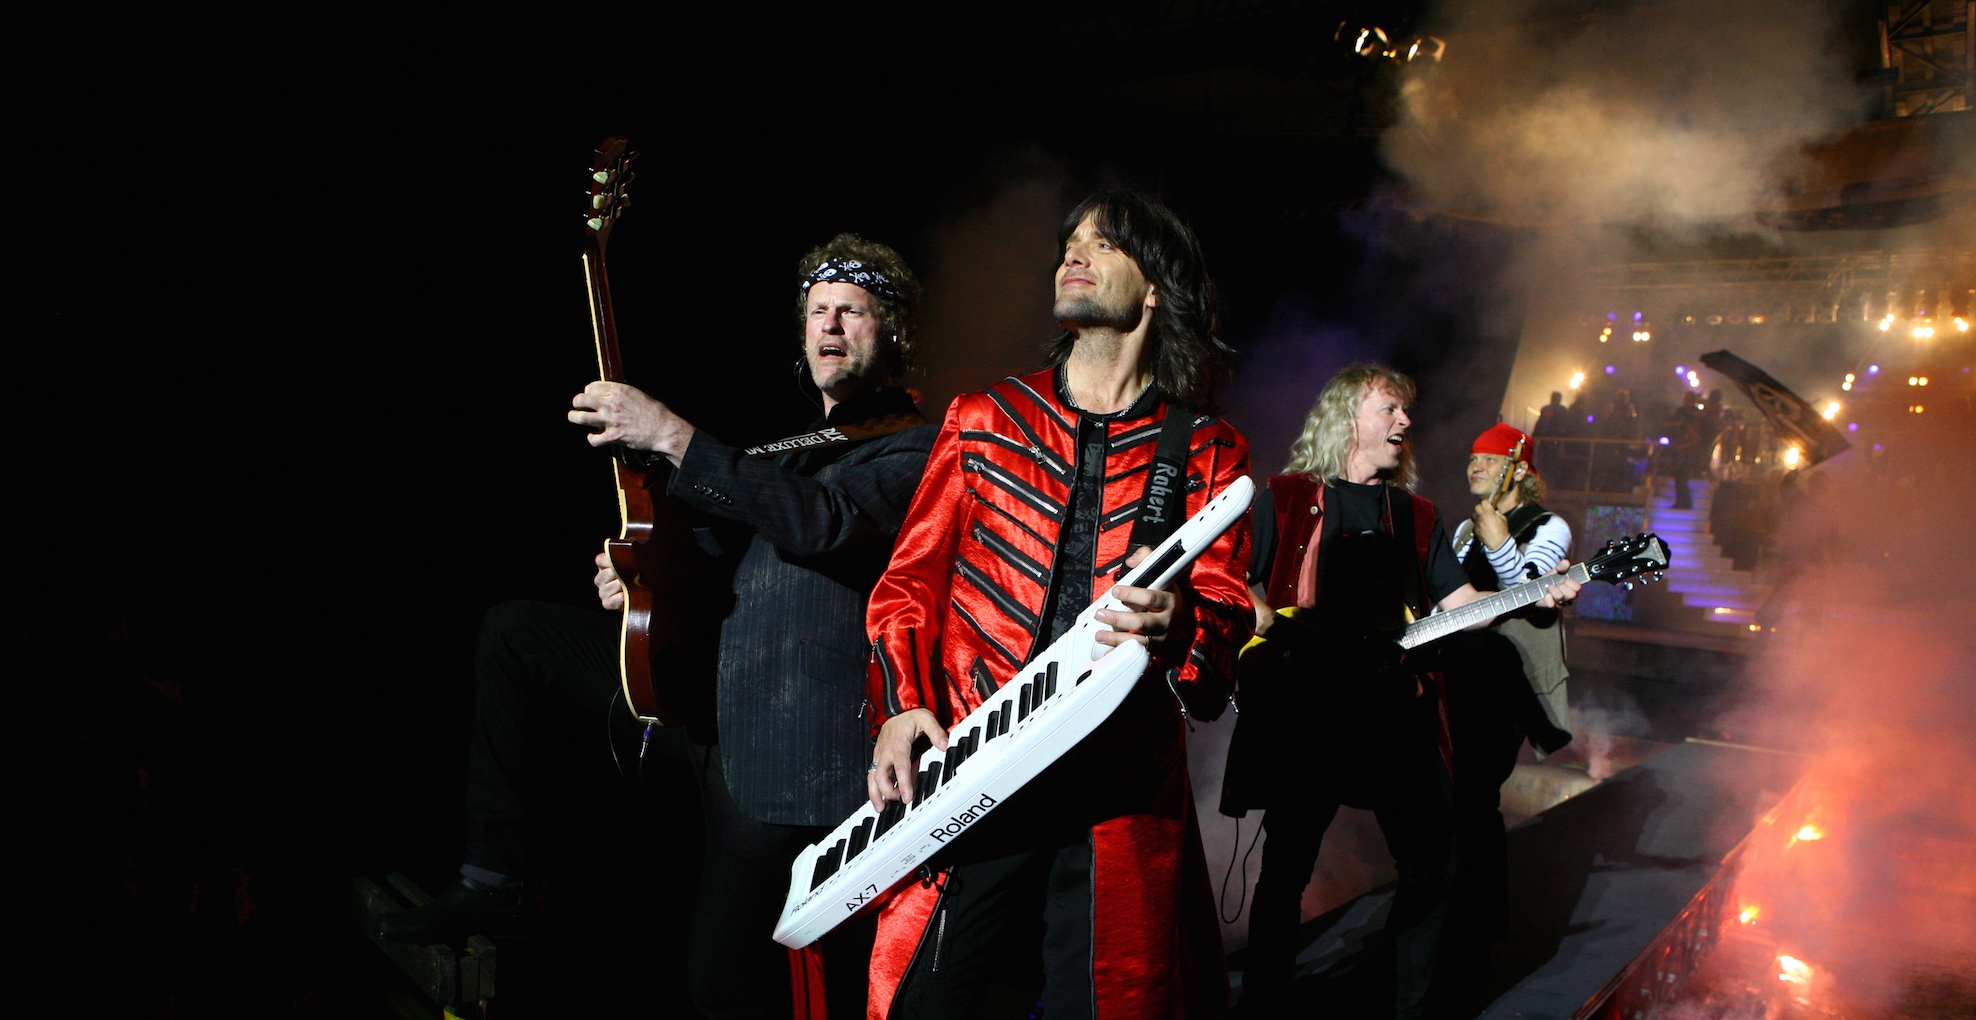 ”Rhapsody In Rock” fyller Dalhalla – Extrakonsert och fler biljetter släpps idag till en av Sveriges mäktigaste konsertupplevelser!